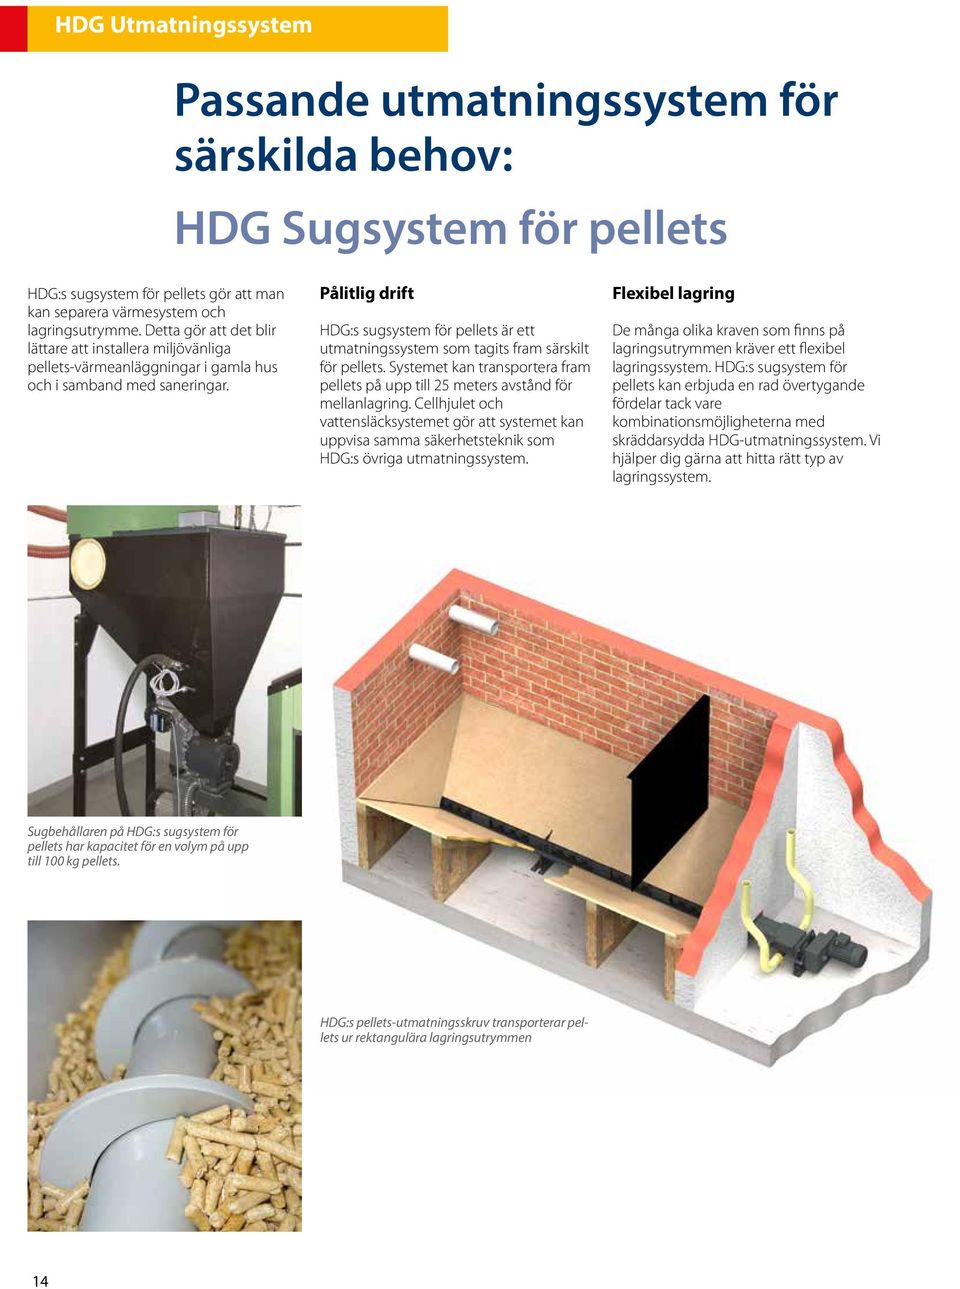 Pålitlig drift HDG:s sugsystem för pellets är ett utmatningssystem som tagits fram särskilt för pellets. Systemet kan transportera fram pellets på upp till 25 meters avstånd för mellanlagring.